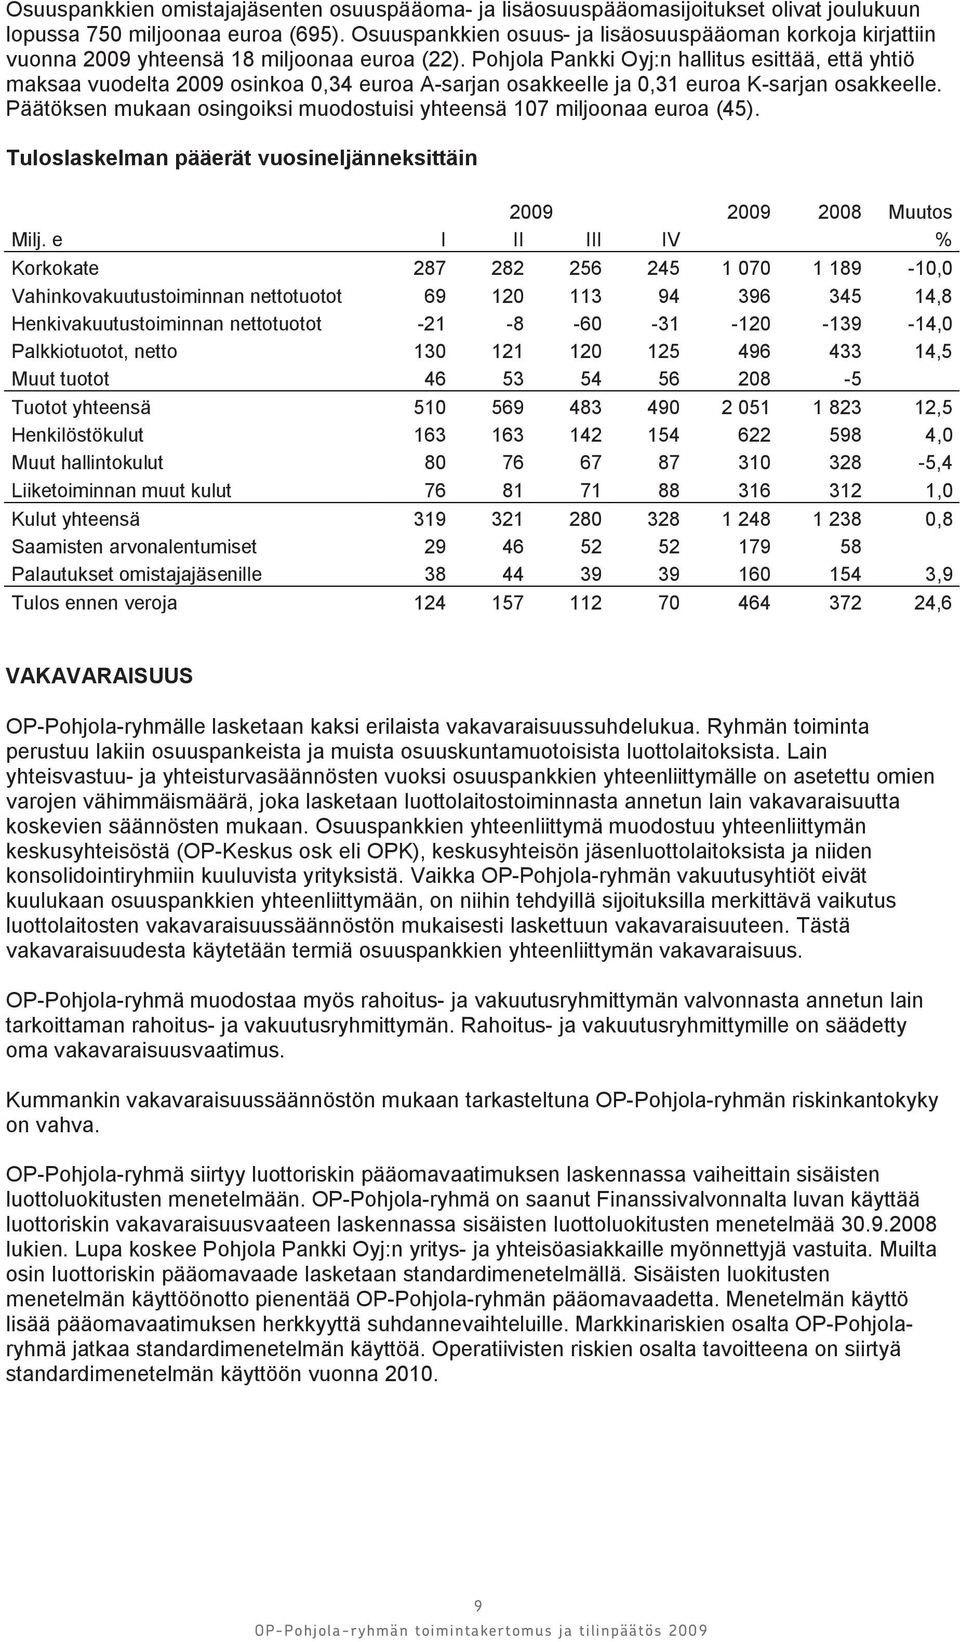 Pohjola Pankki Oyj:n hallitus esittää, että yhtiö maksaa vuodelta 2009 osinkoa 0,34 euroa A-sarjan osakkeelle ja 0,31 euroa K-sarjan osakkeelle.